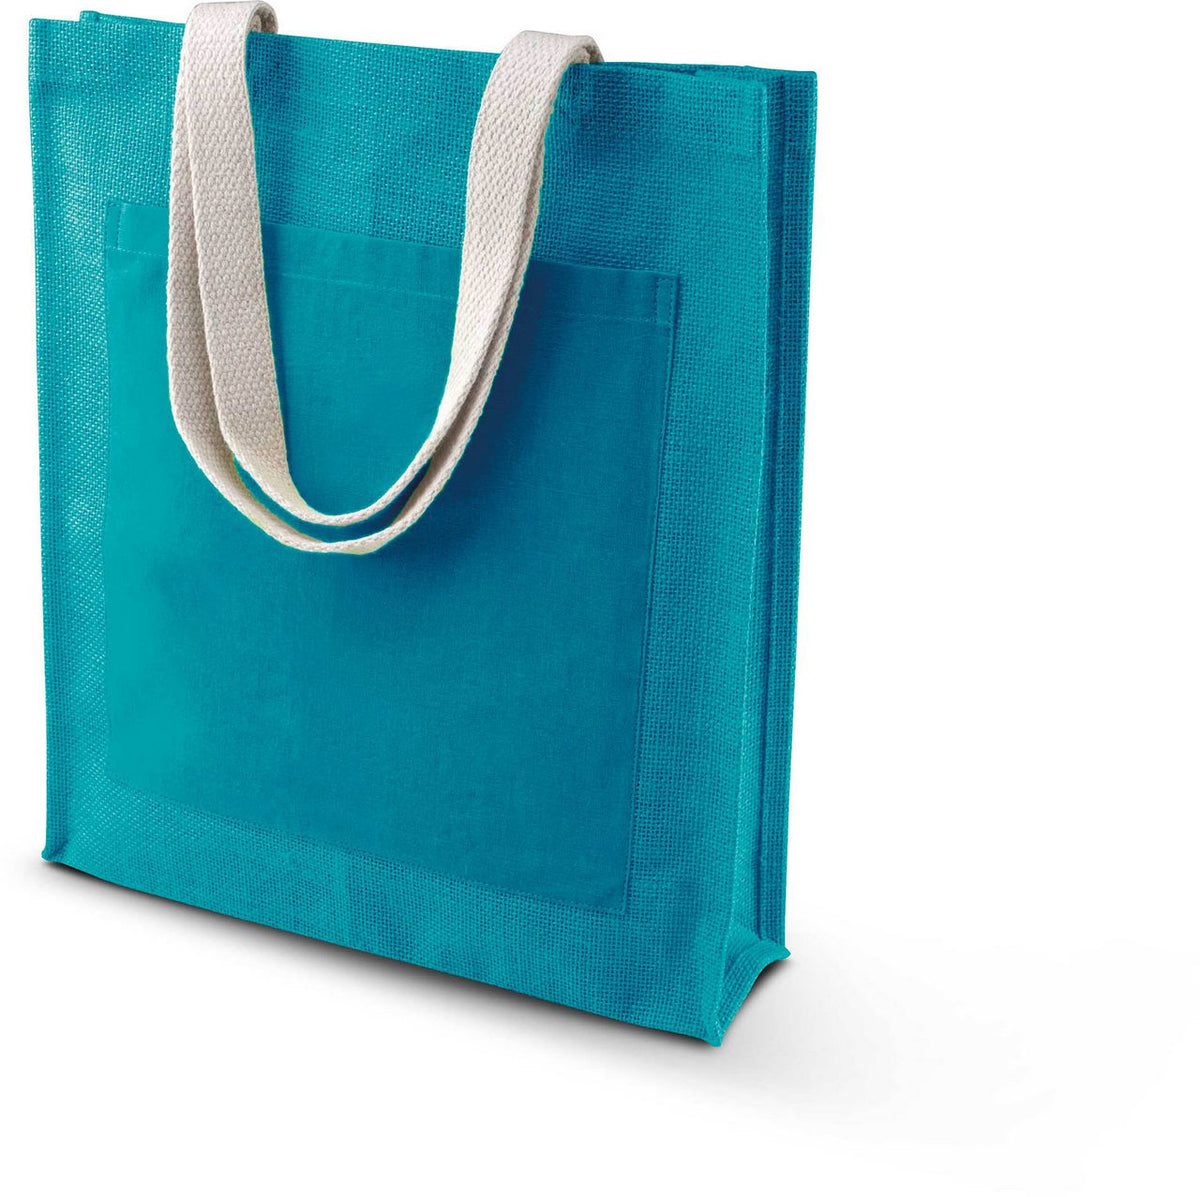 Kimood Shopper Bag Jute Einkaufstasche Tragetasche Midi Strandtasche